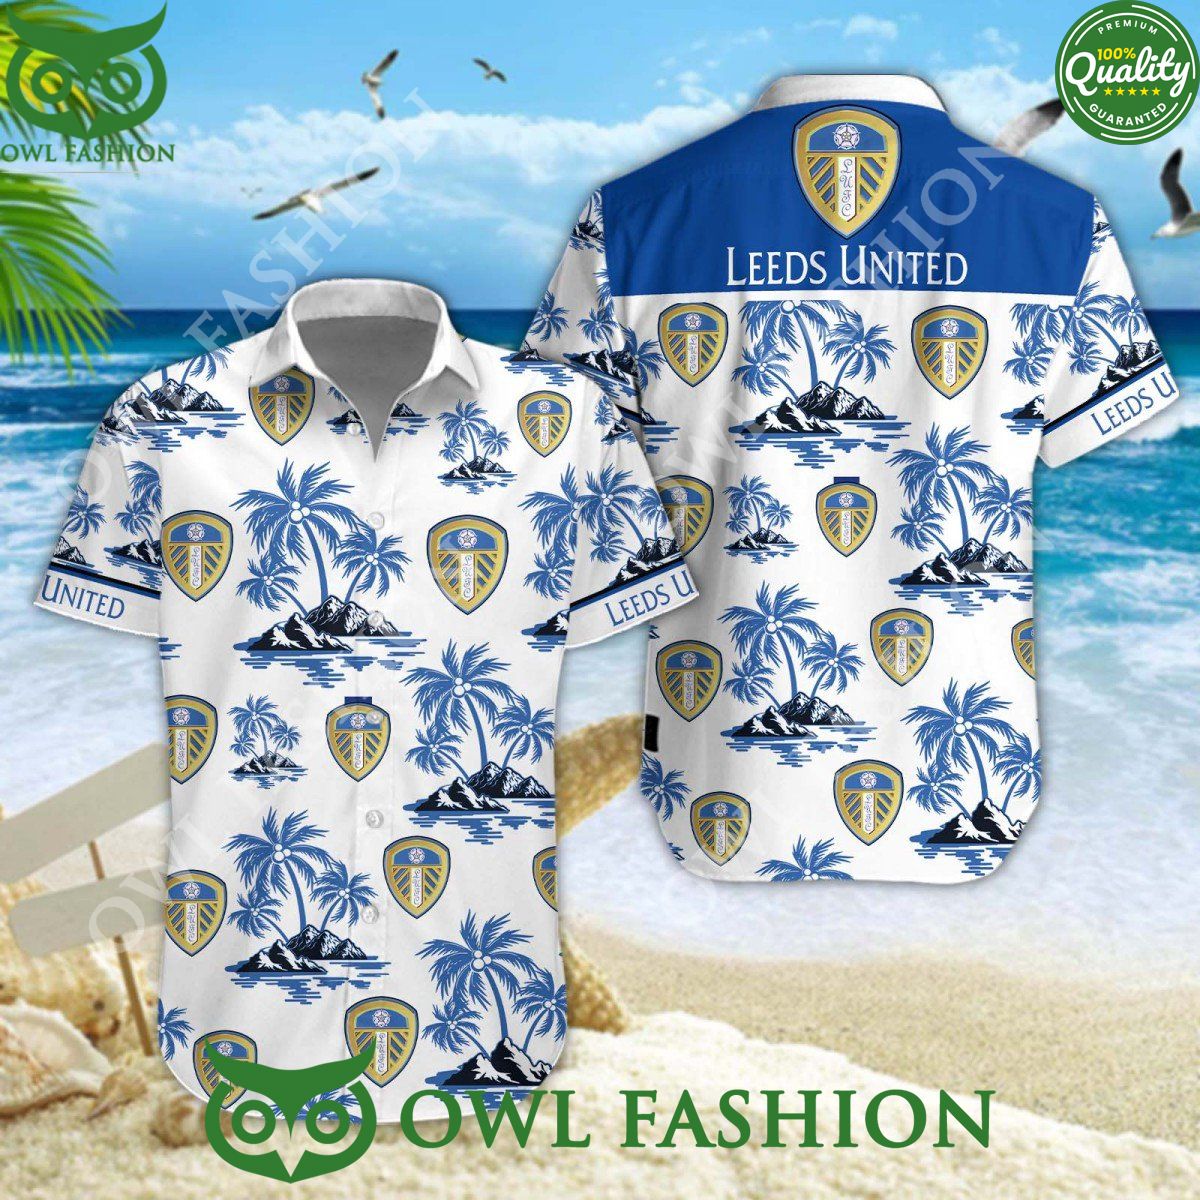 football club leeds united in championship island coconut hawaiian shirt 1 3yLfO.jpg